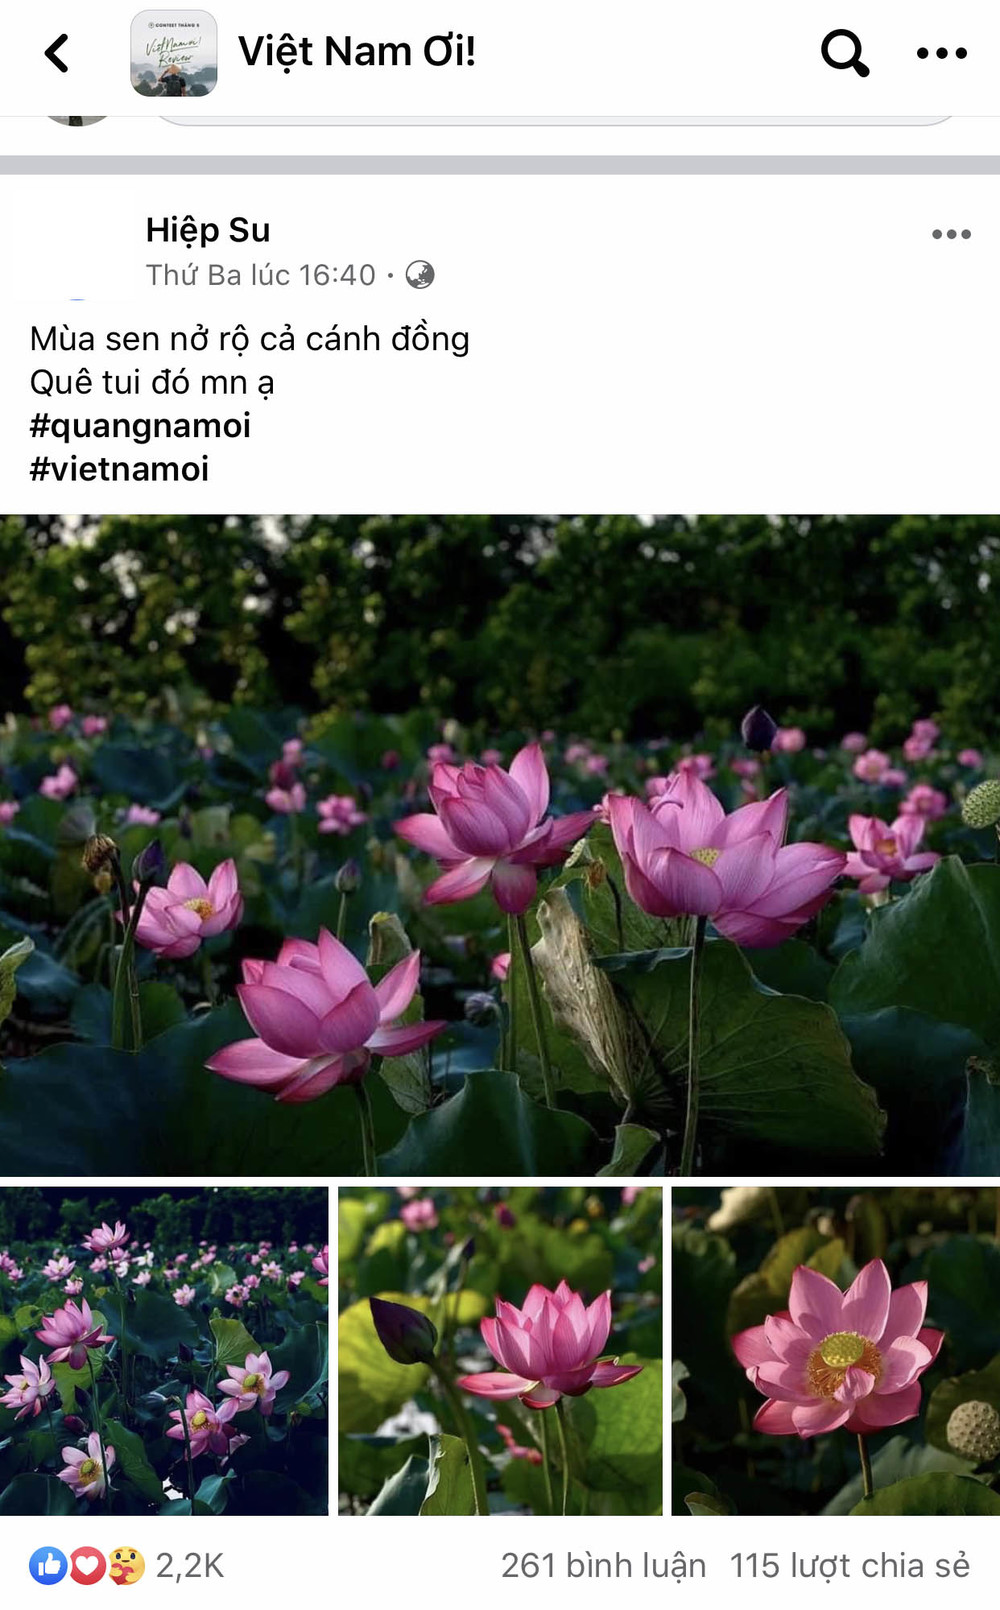  
Những thước ảnh bình dị về đồng quê Việt Nam cũng nhận lượt tương tác nhiệt tình từ cộng đồng.